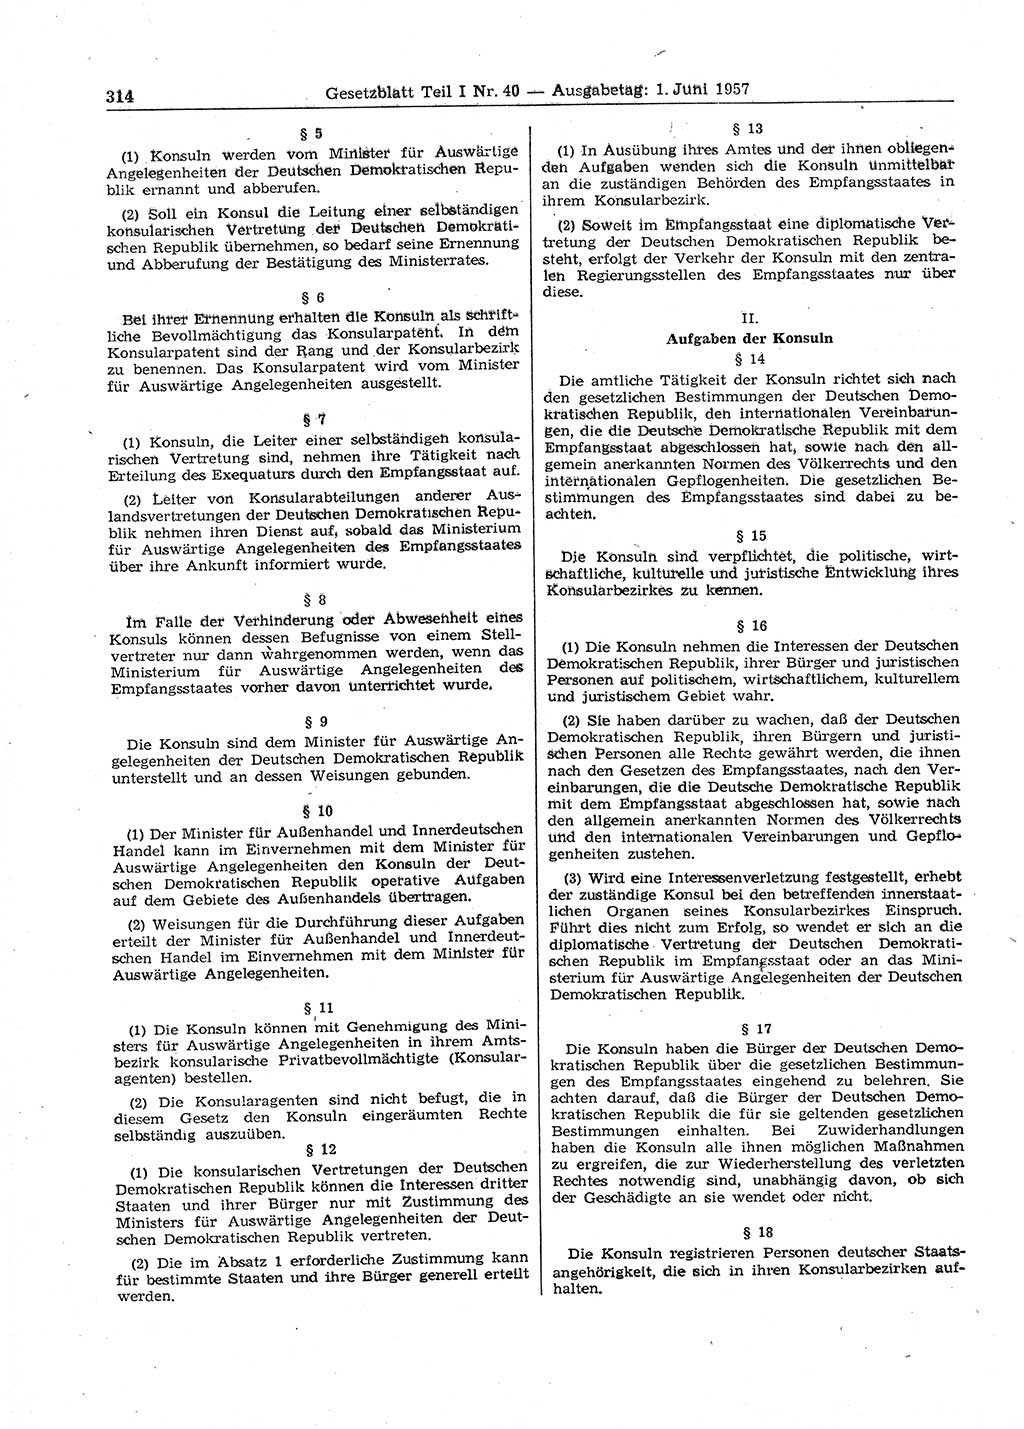 Gesetzblatt (GBl.) der Deutschen Demokratischen Republik (DDR) Teil Ⅰ 1957, Seite 314 (GBl. DDR Ⅰ 1957, S. 314)